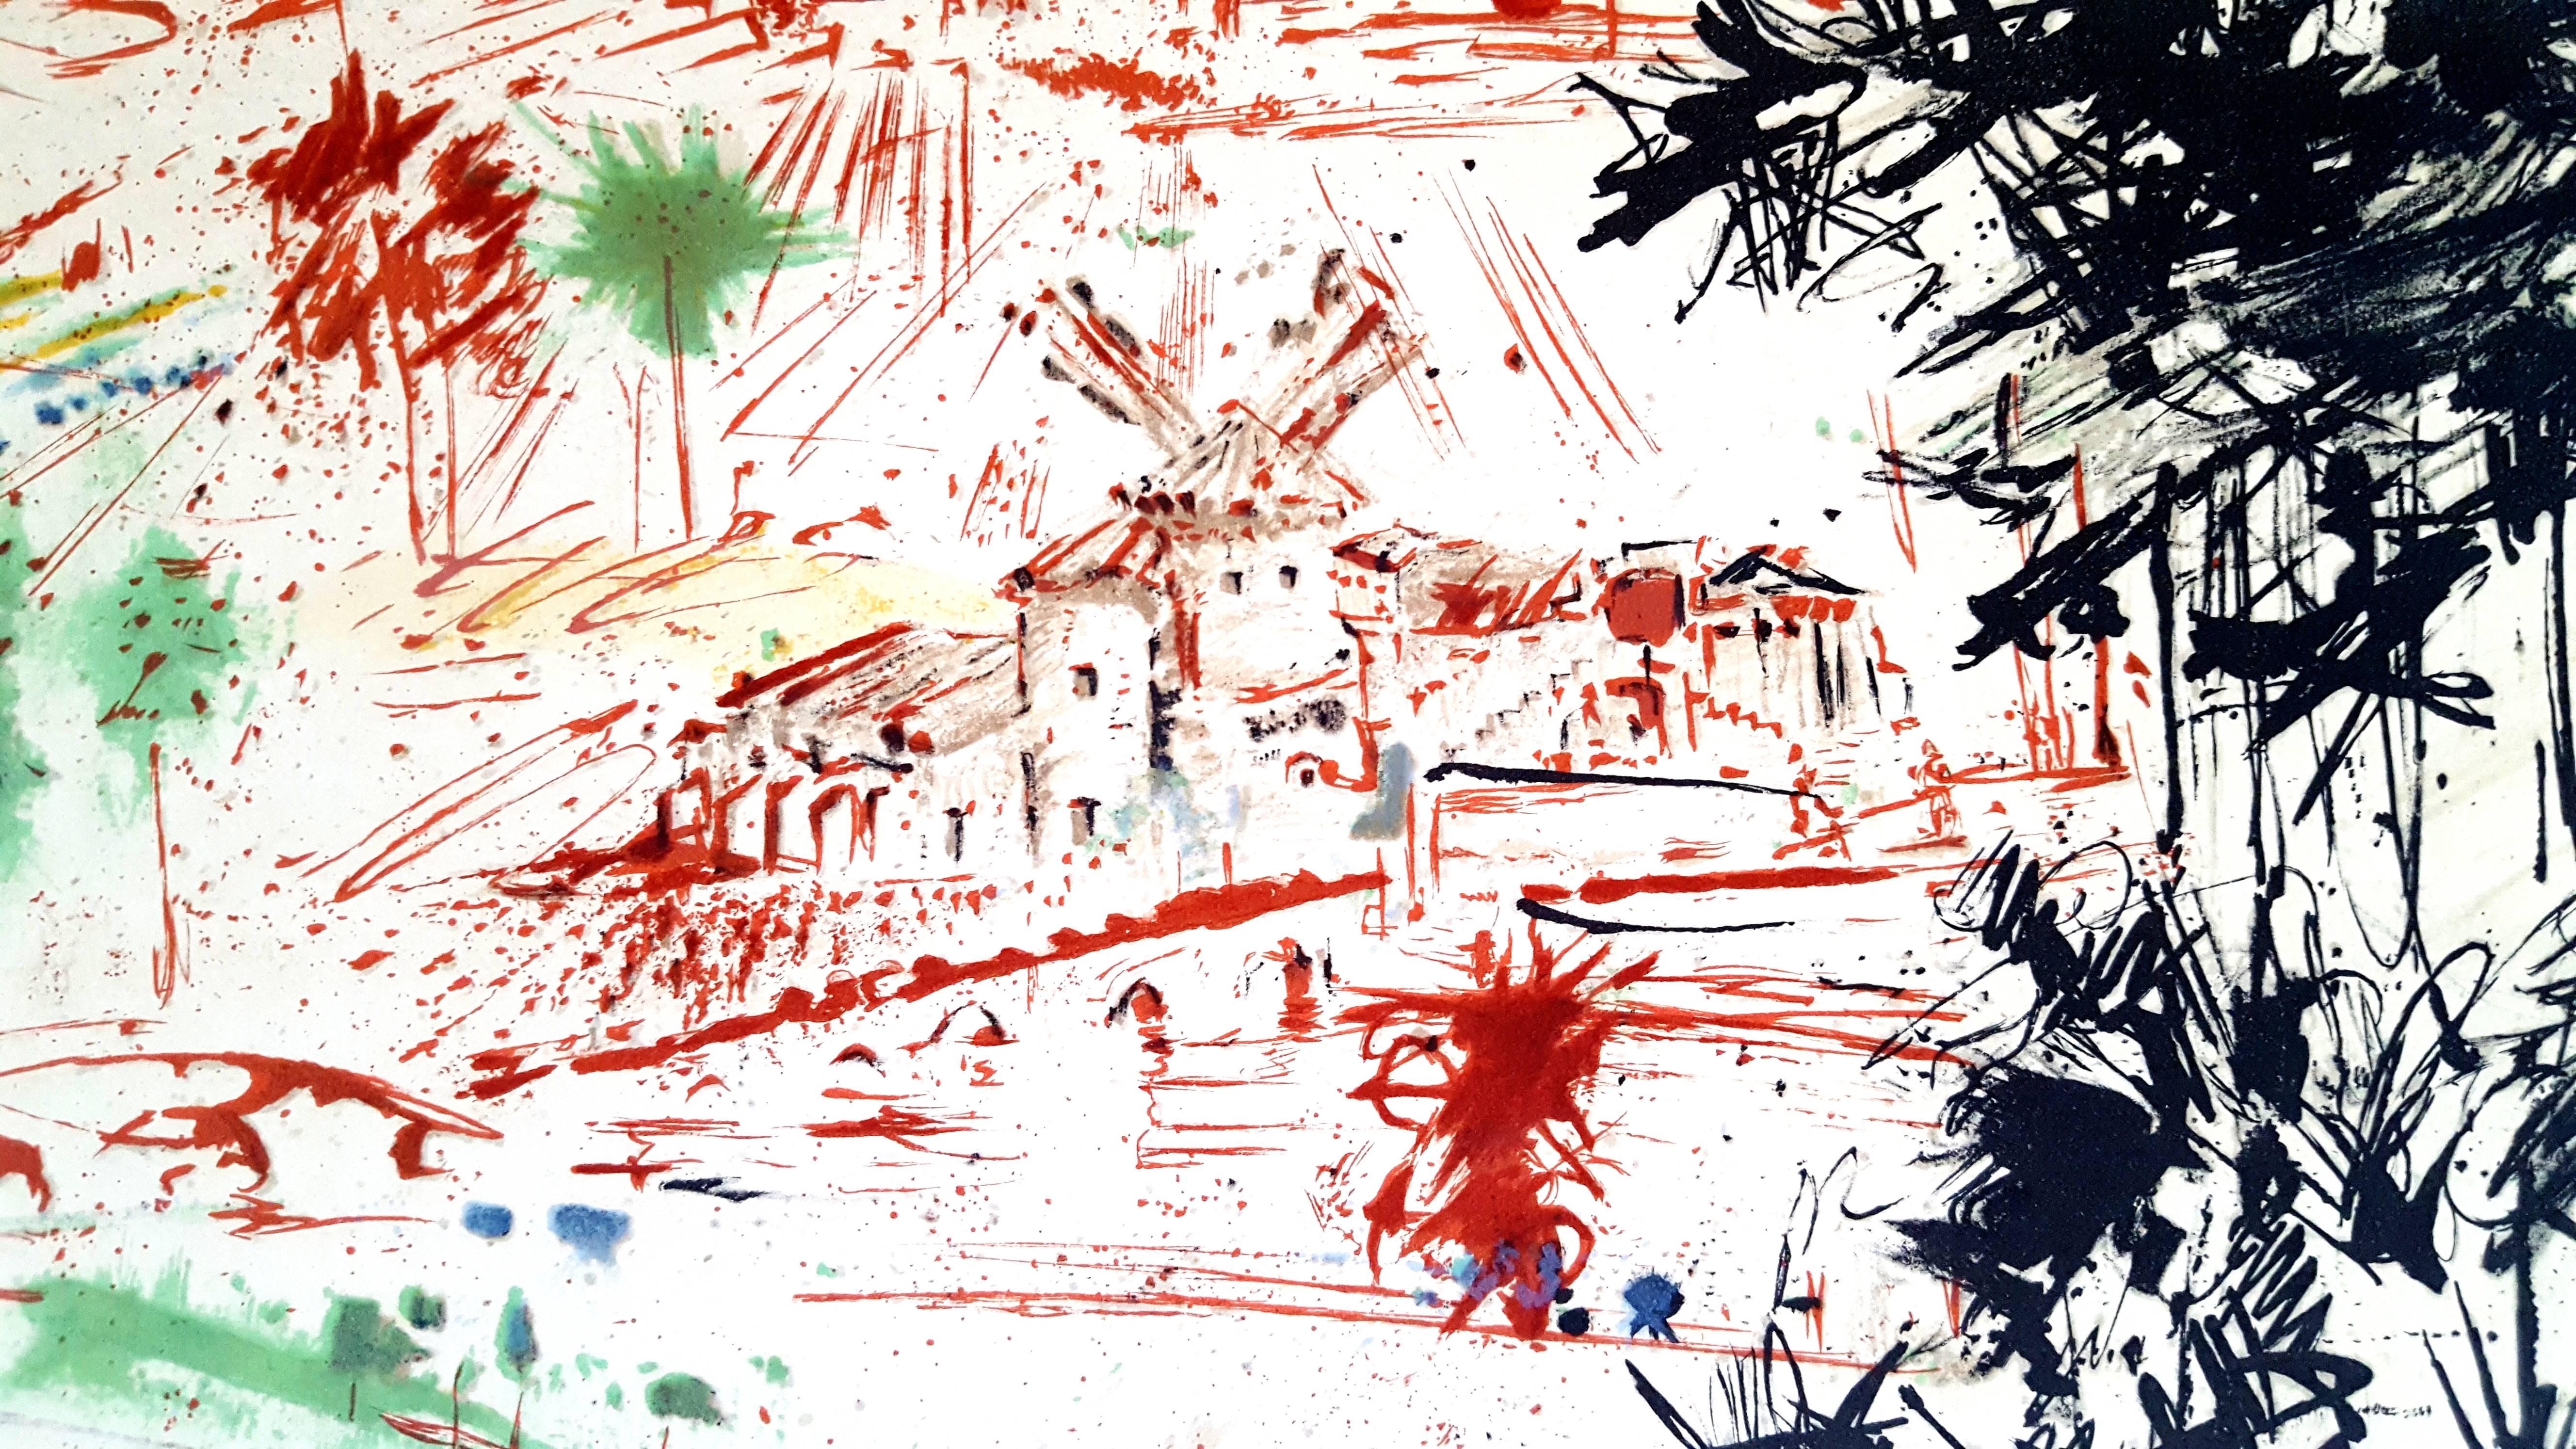 Salvador Dali - Don Quichotte - Original Lithograph
Joseph FORET, Paris, 1957
PRINTER : Atelier Mourlot. 
- SIGNATURE : plate signed by Dali. 
- LIMITED : 197 copies. 
- PAPER : BFK Rives vellum. 
- SIZE : 25 3/8 x 16